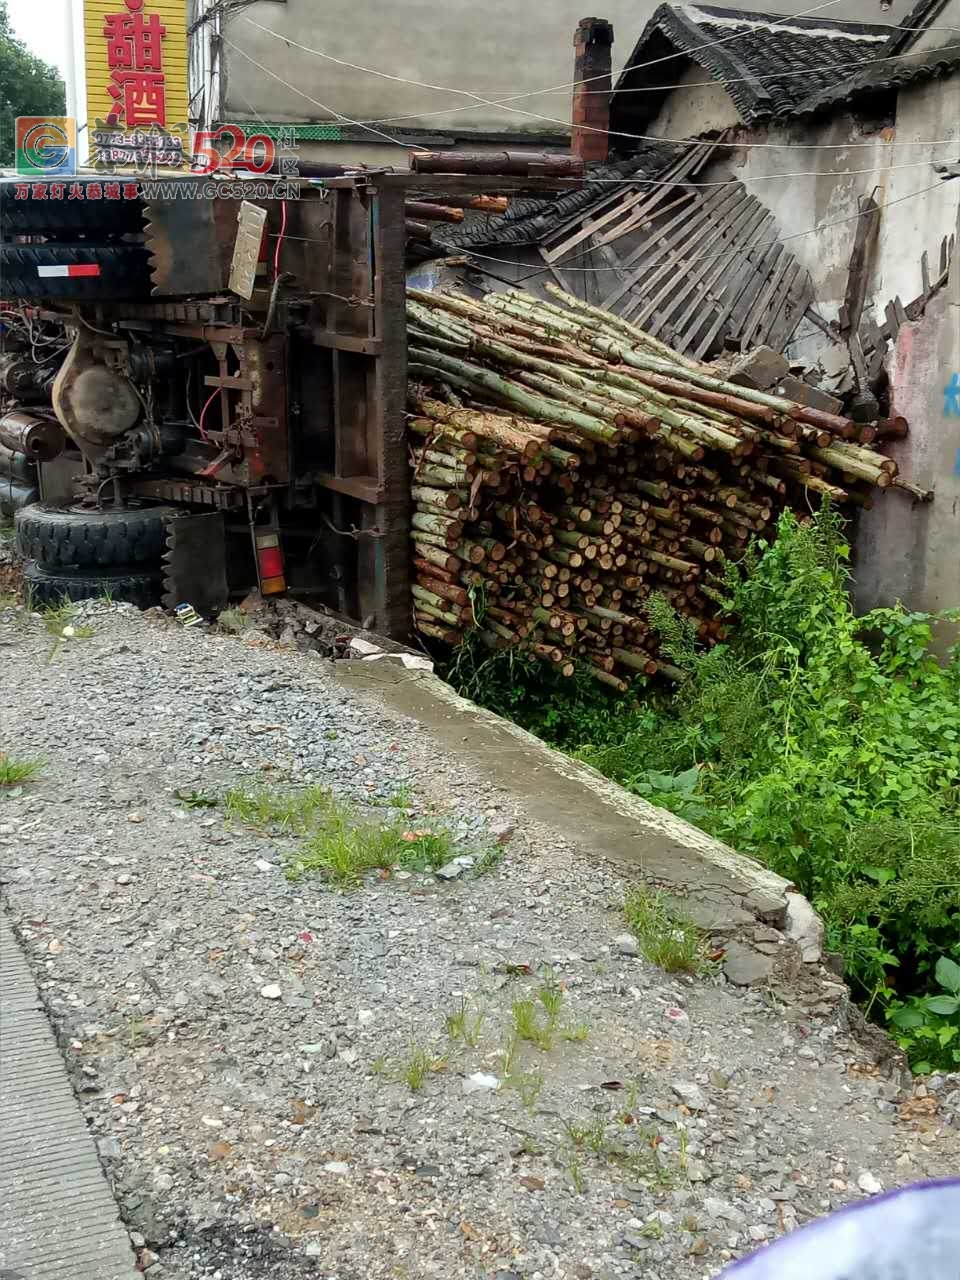 昨晚加会酒饼厂的一间民房被一辆停在路边装满木头货车压到，所幸无人员伤害772 / 作者:流浪者 / 帖子ID:235176